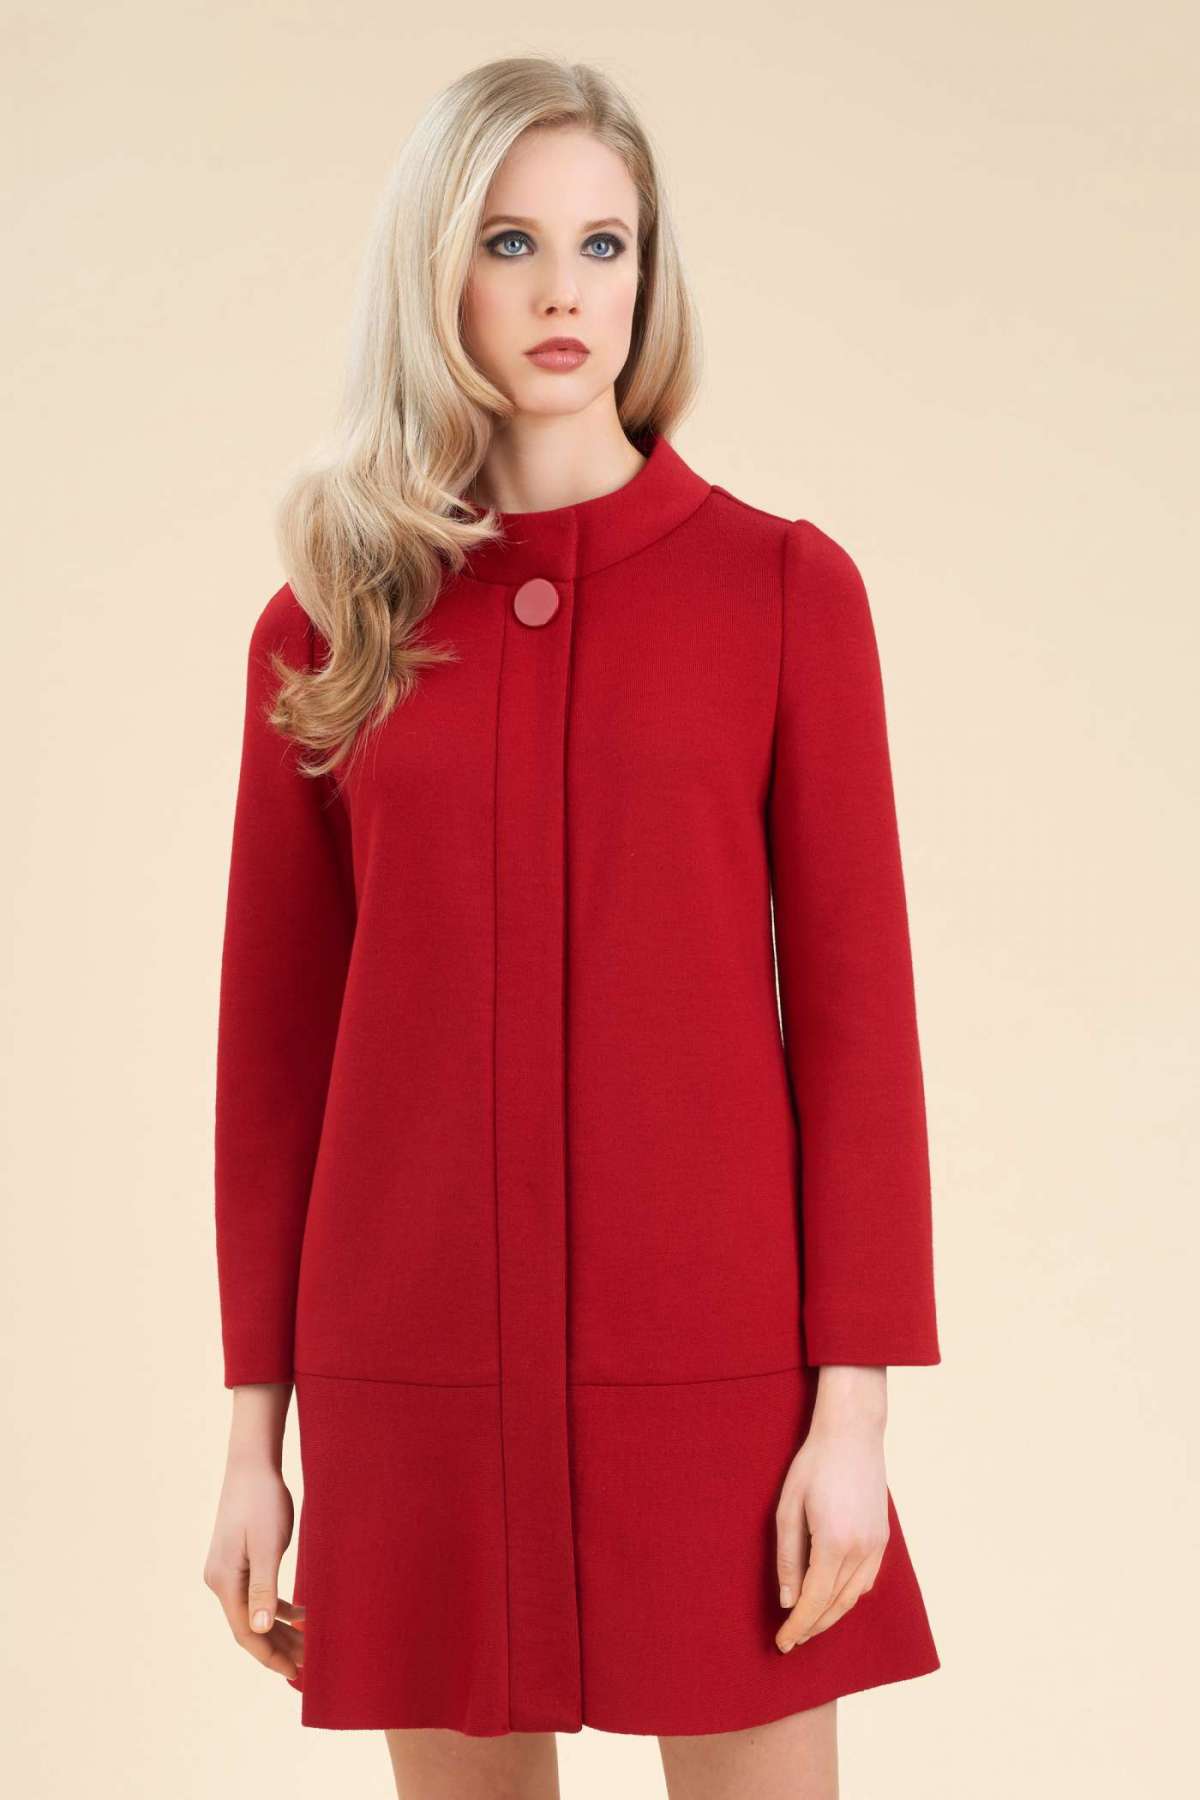 Cappotto rosso in lana Luisa Spagnoli a 490 euro